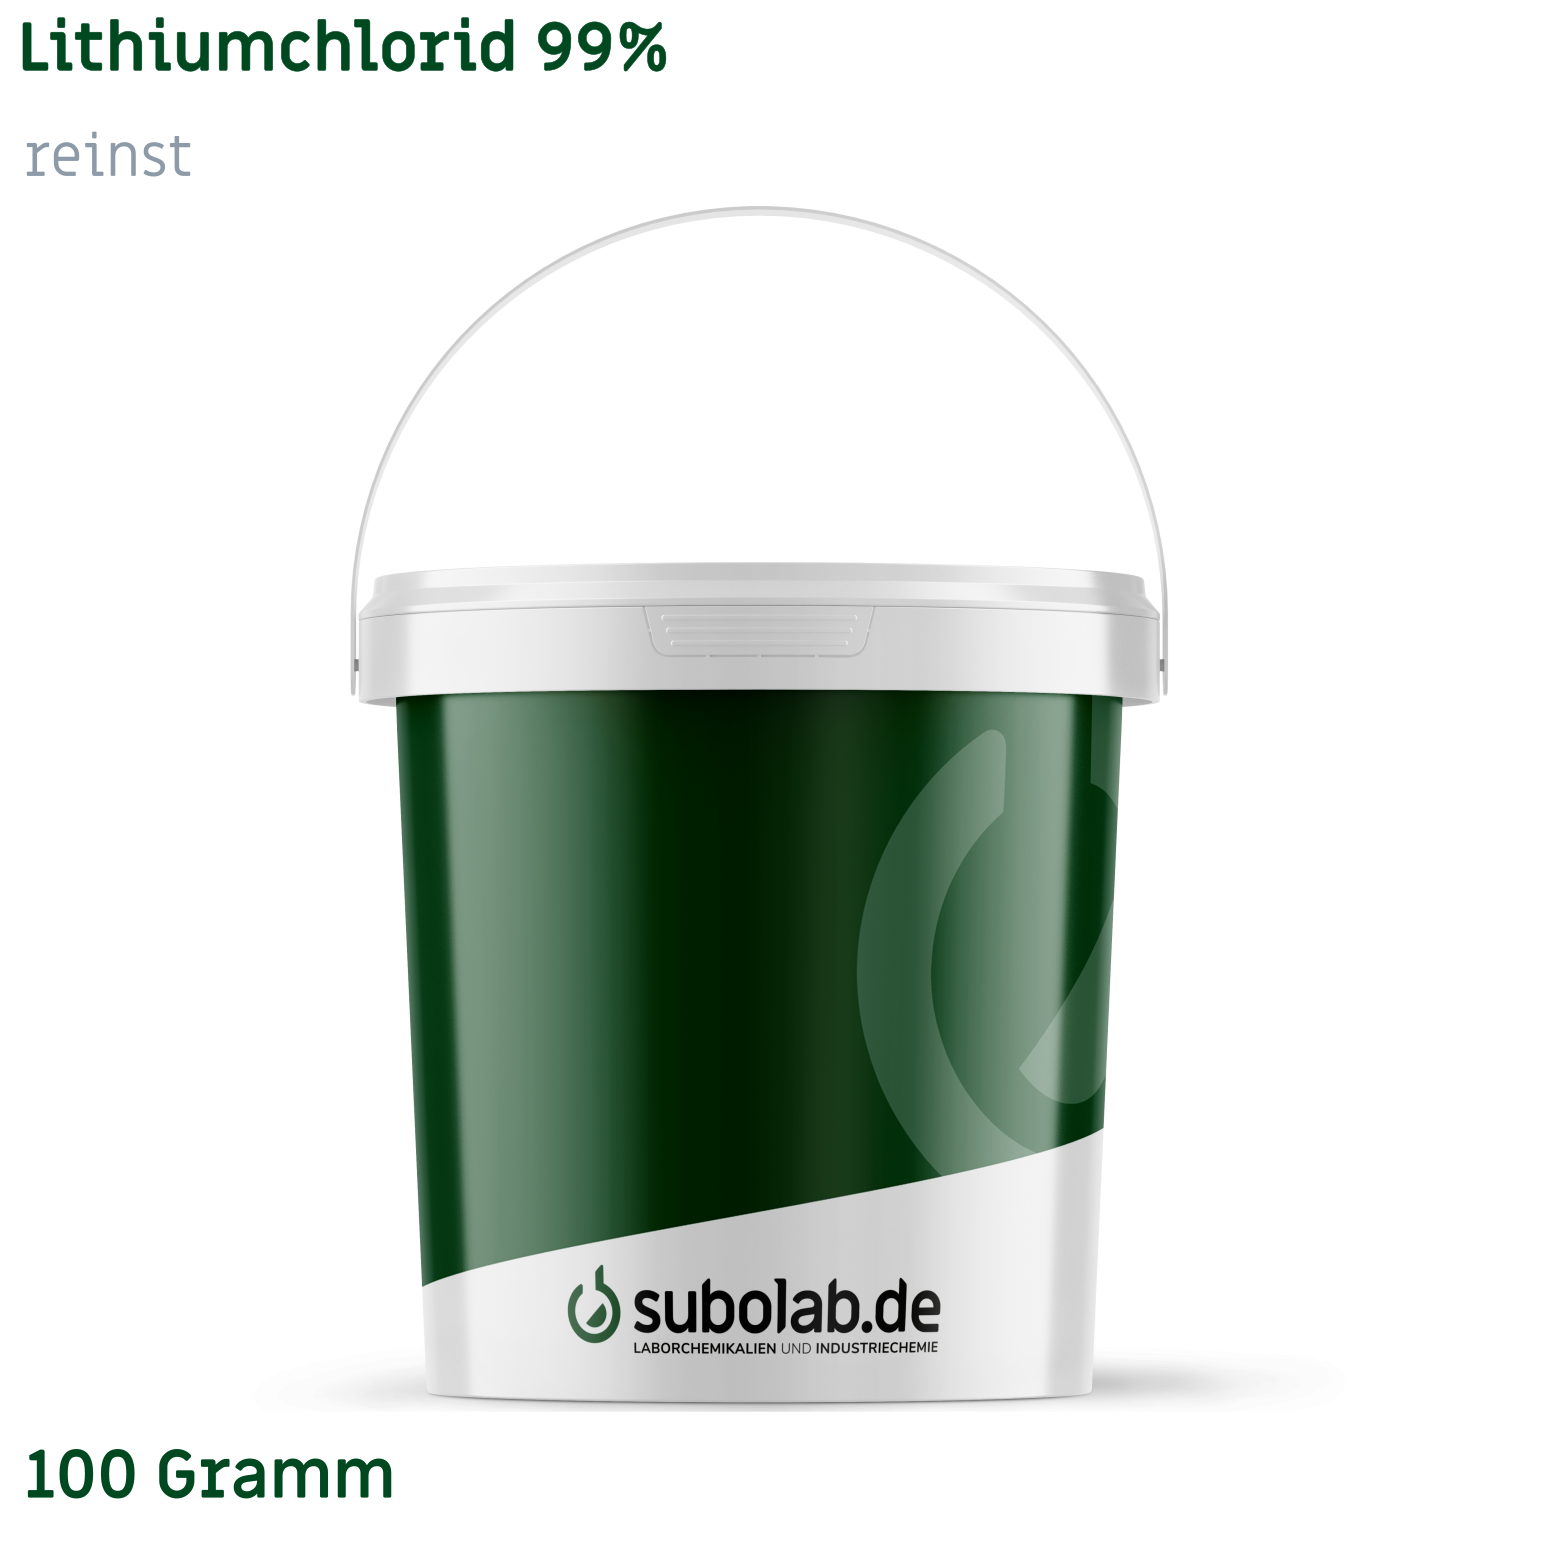 Bild von Lithiumchlorid 99% reinst (100 Gramm)